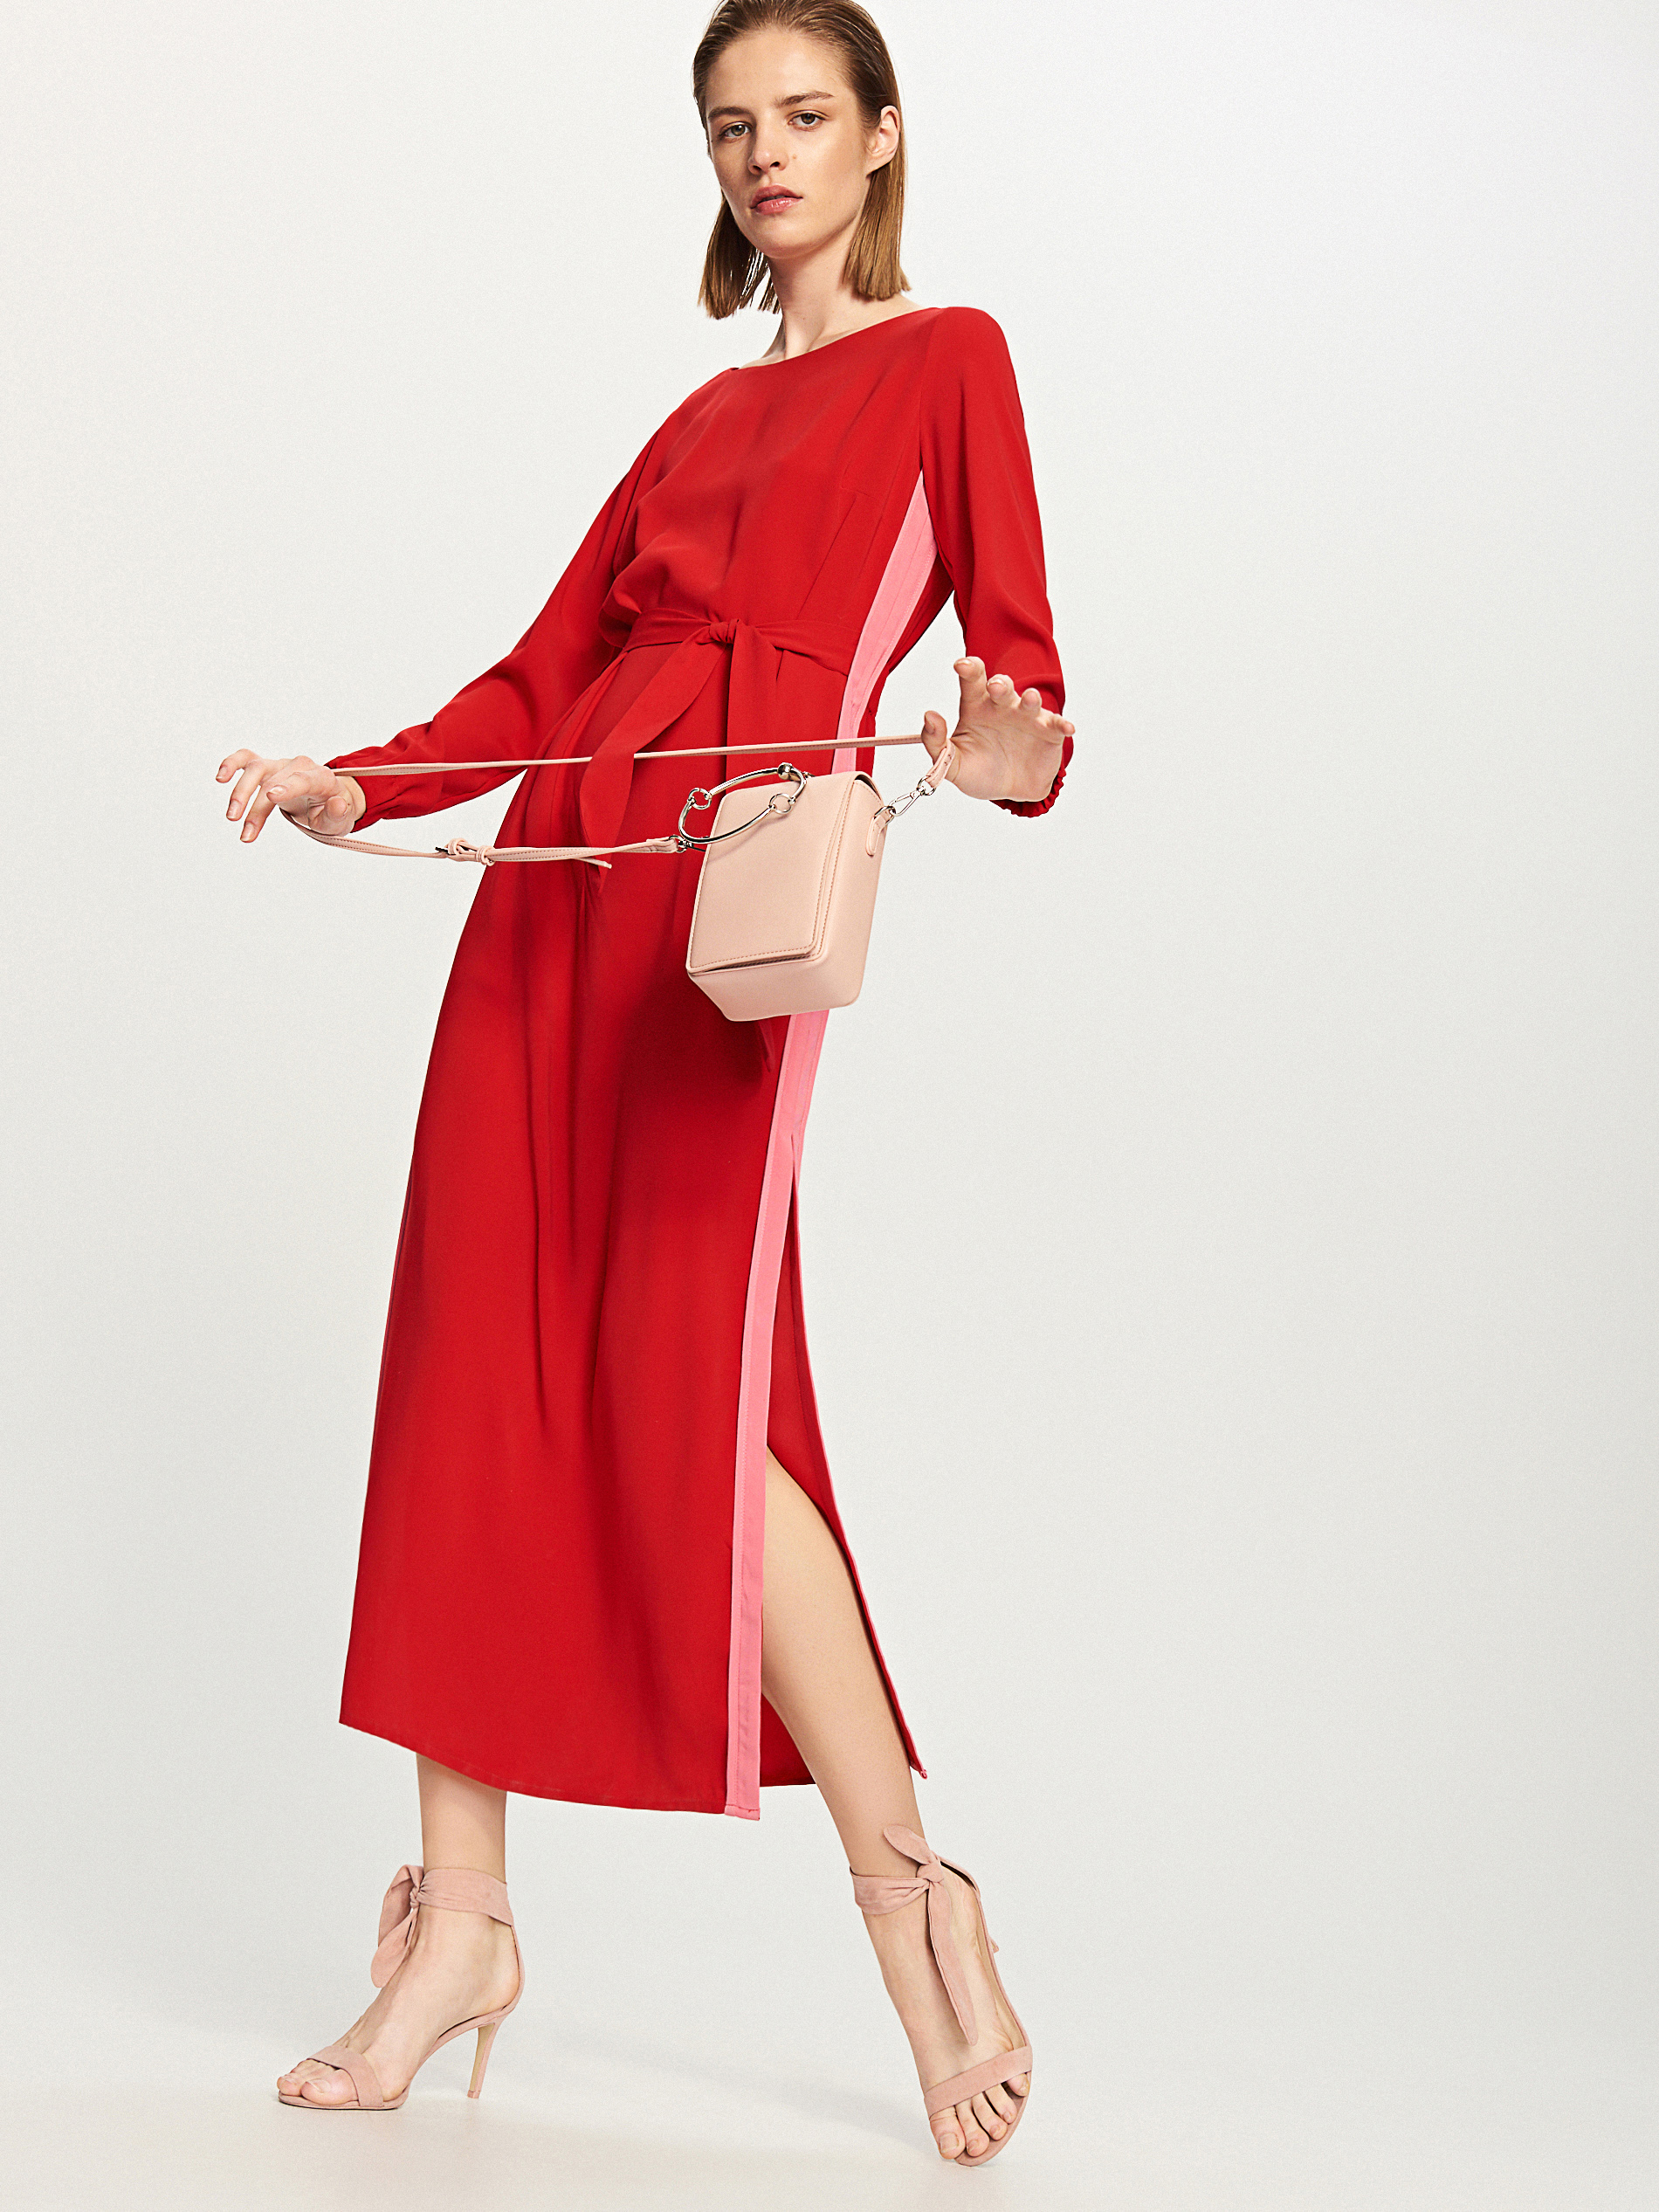 Модель в красном платье и бежевых босоножках